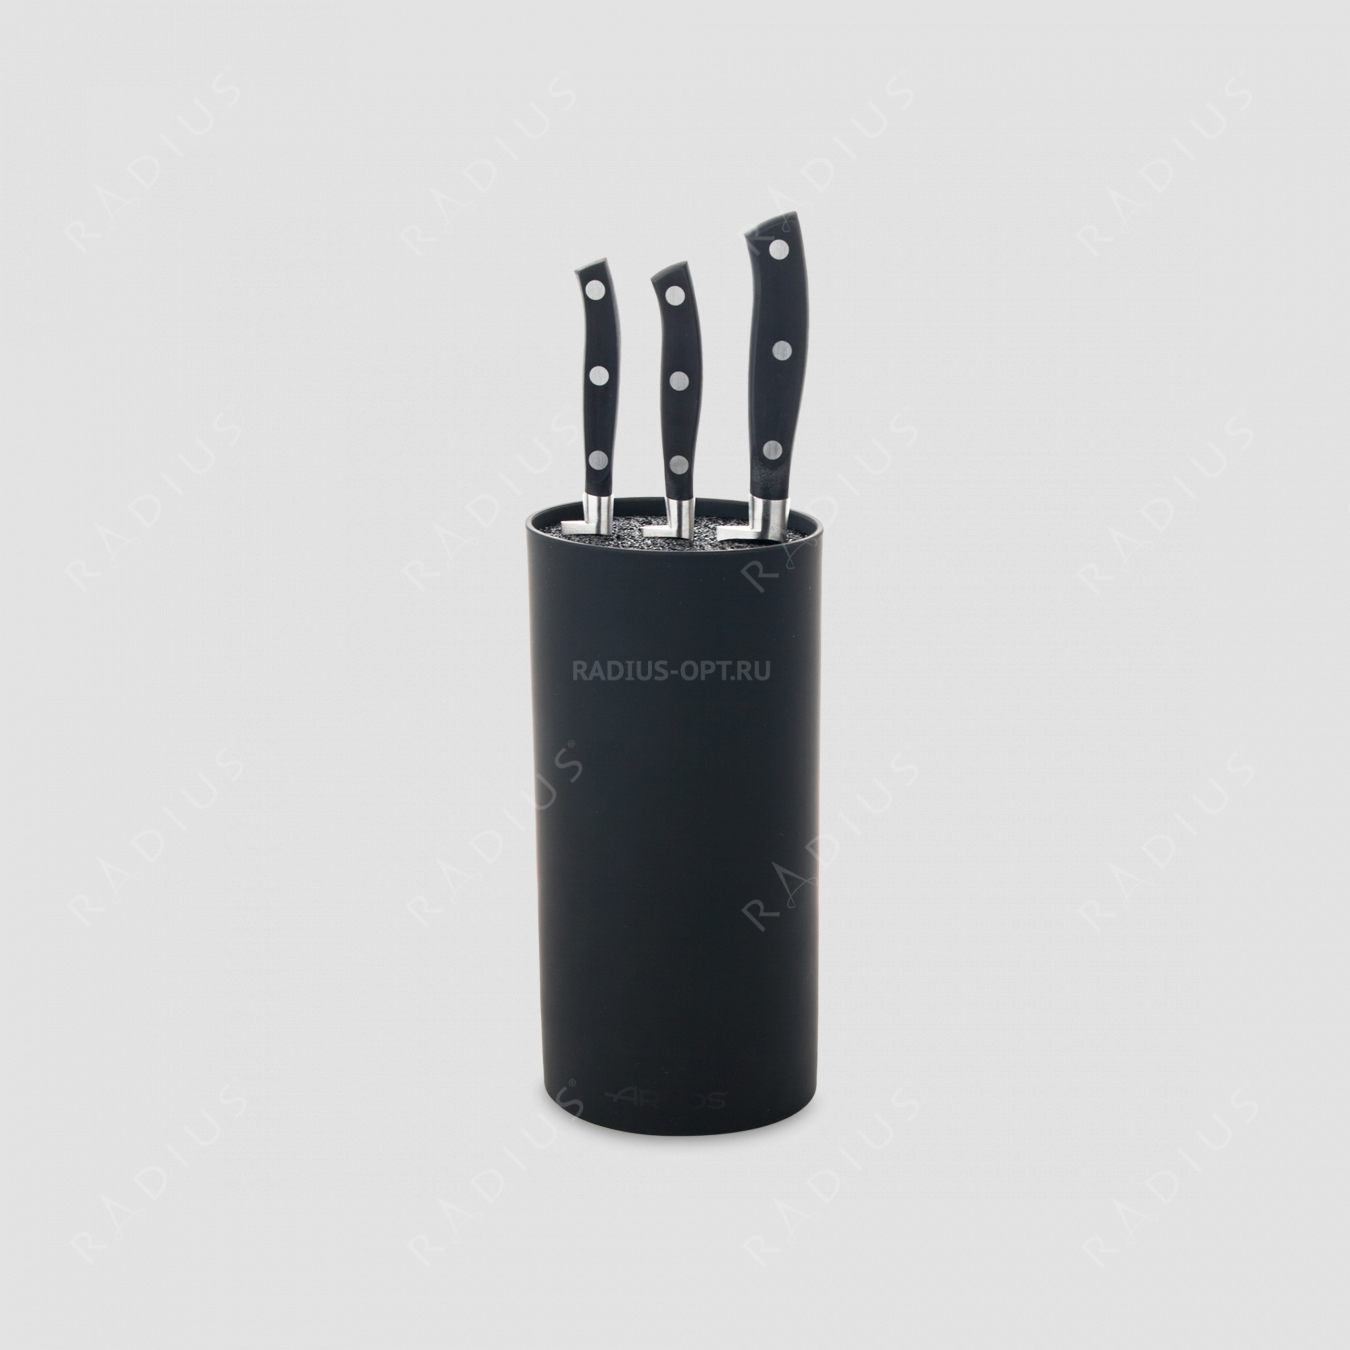 Набор из 3-х кухонных ножей с черной подставкой, серия Riviera, ARCOS, Испания